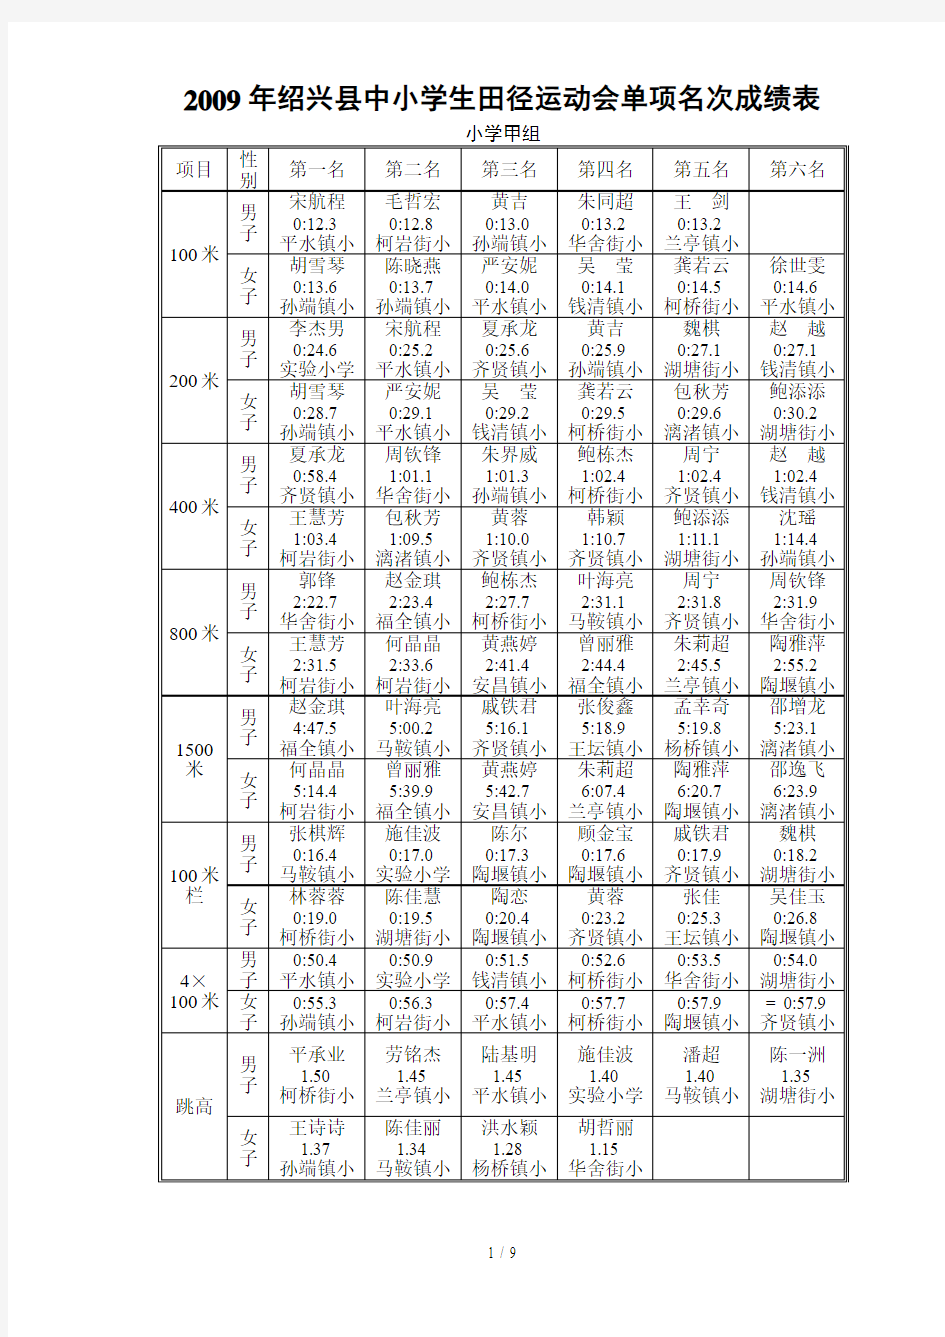 绍兴县中小学生田径运动会单项名次成绩表